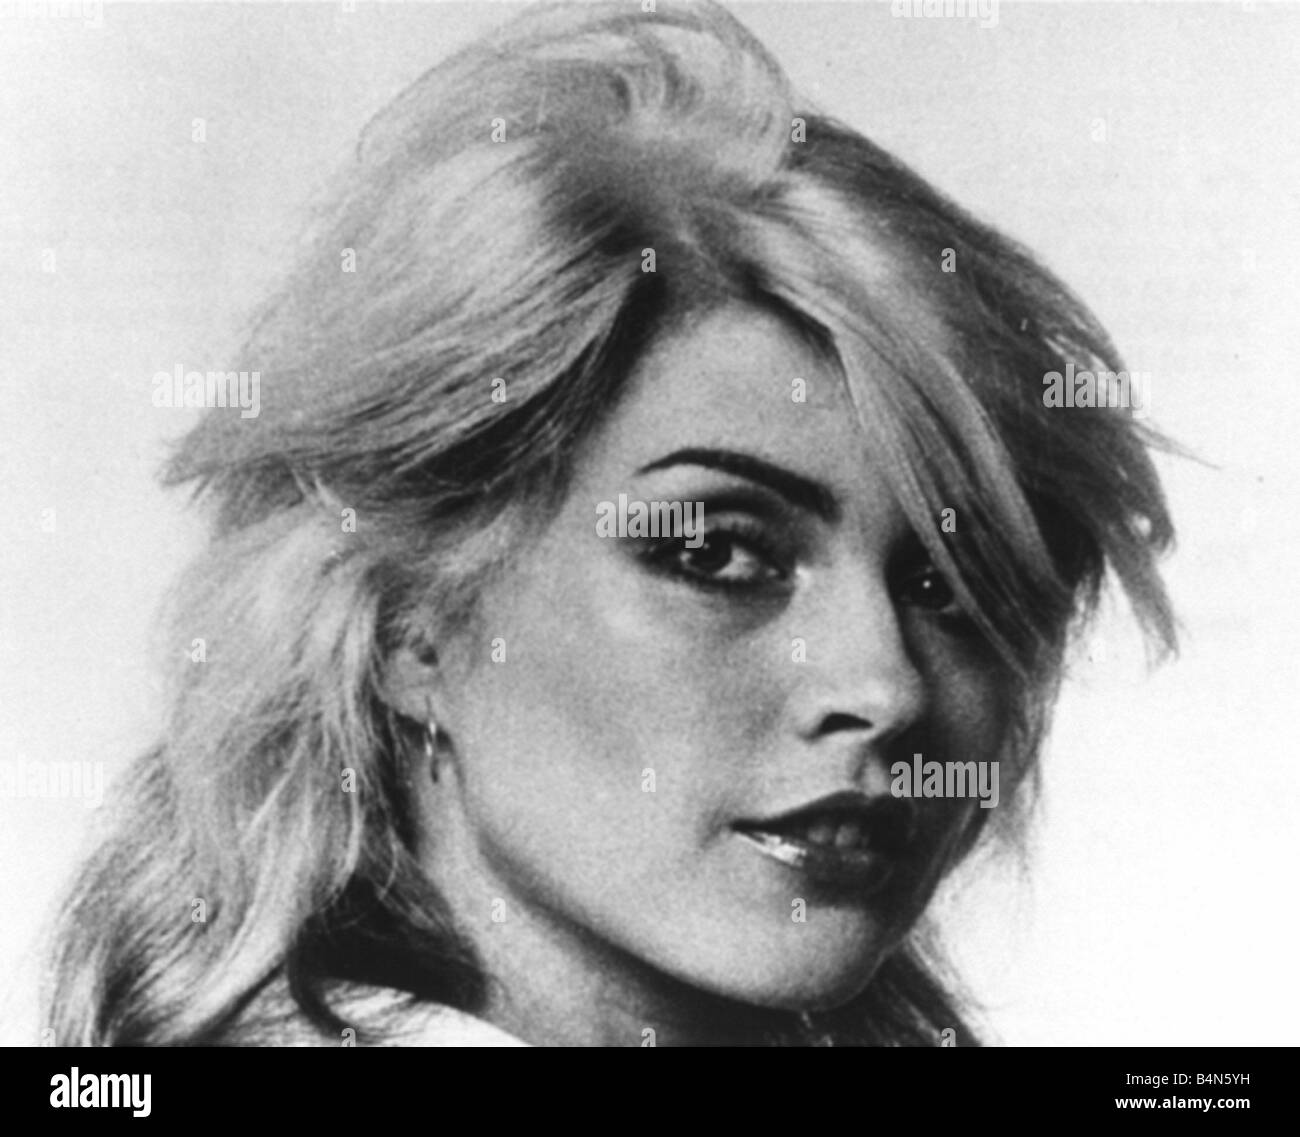 Debbie Harry singer pop group Blondie 1979 Stock Photo